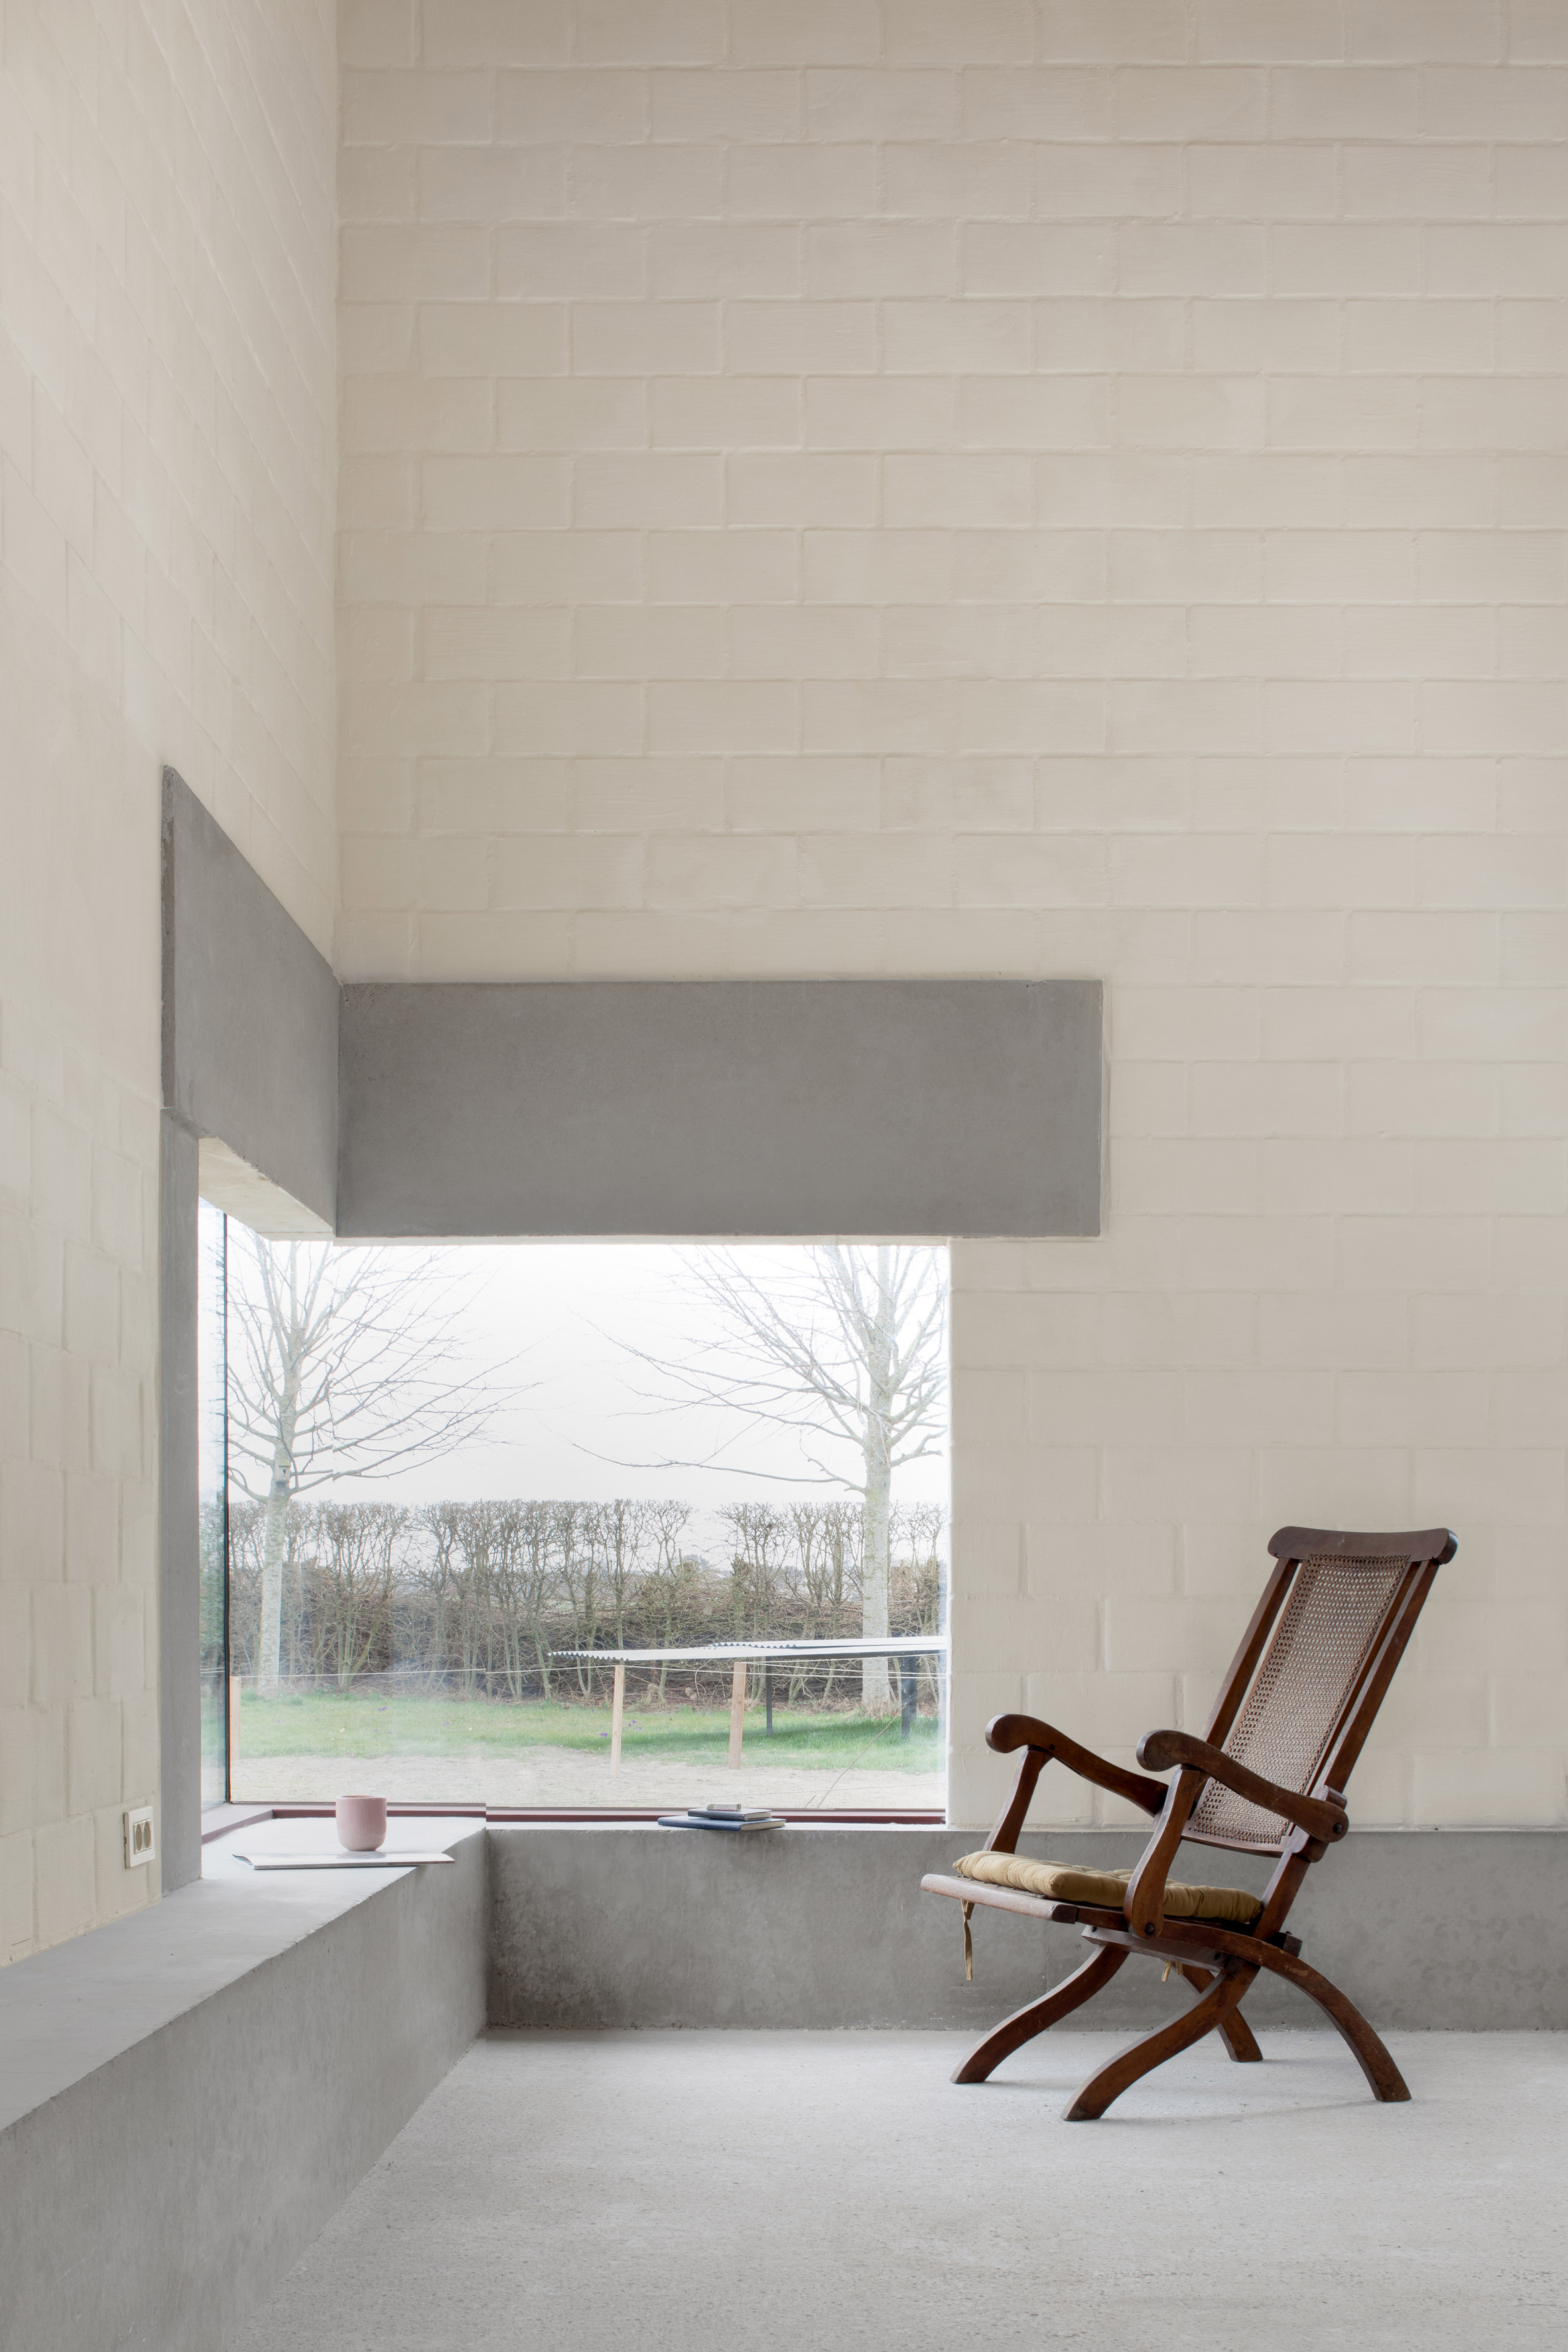 Stief Desmet studio by Graux & Baeyens Architecten